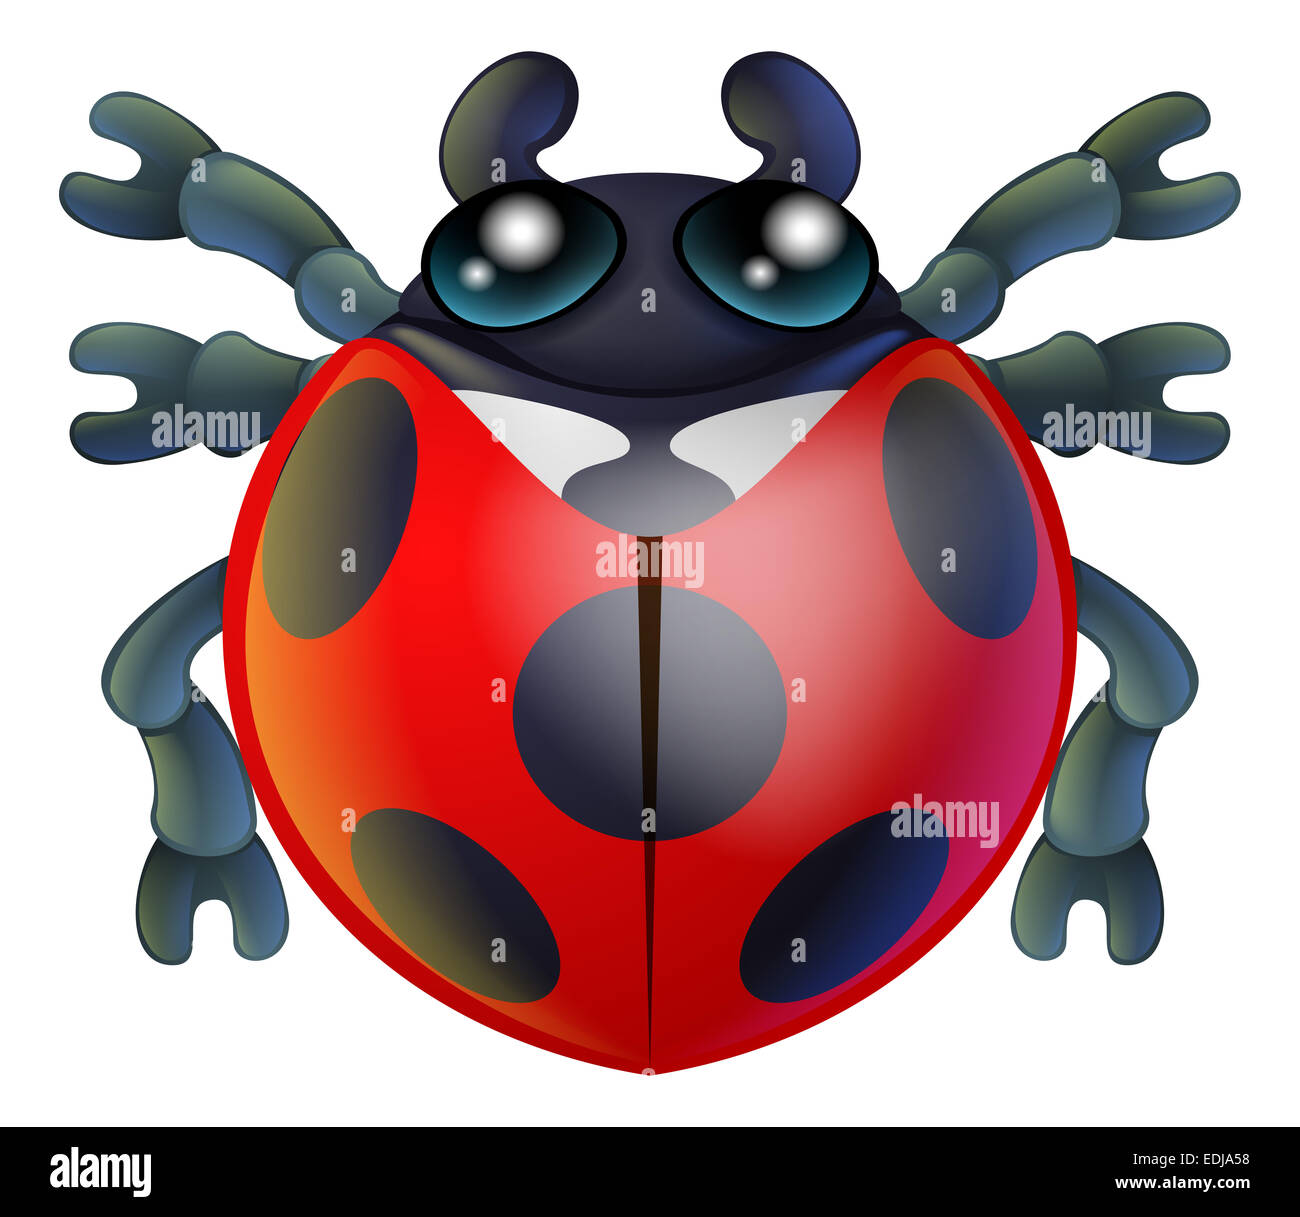 Eine niedliche Marienkäfer oder Marienkäfer Insekt Käfer Comicfigur Stockfoto